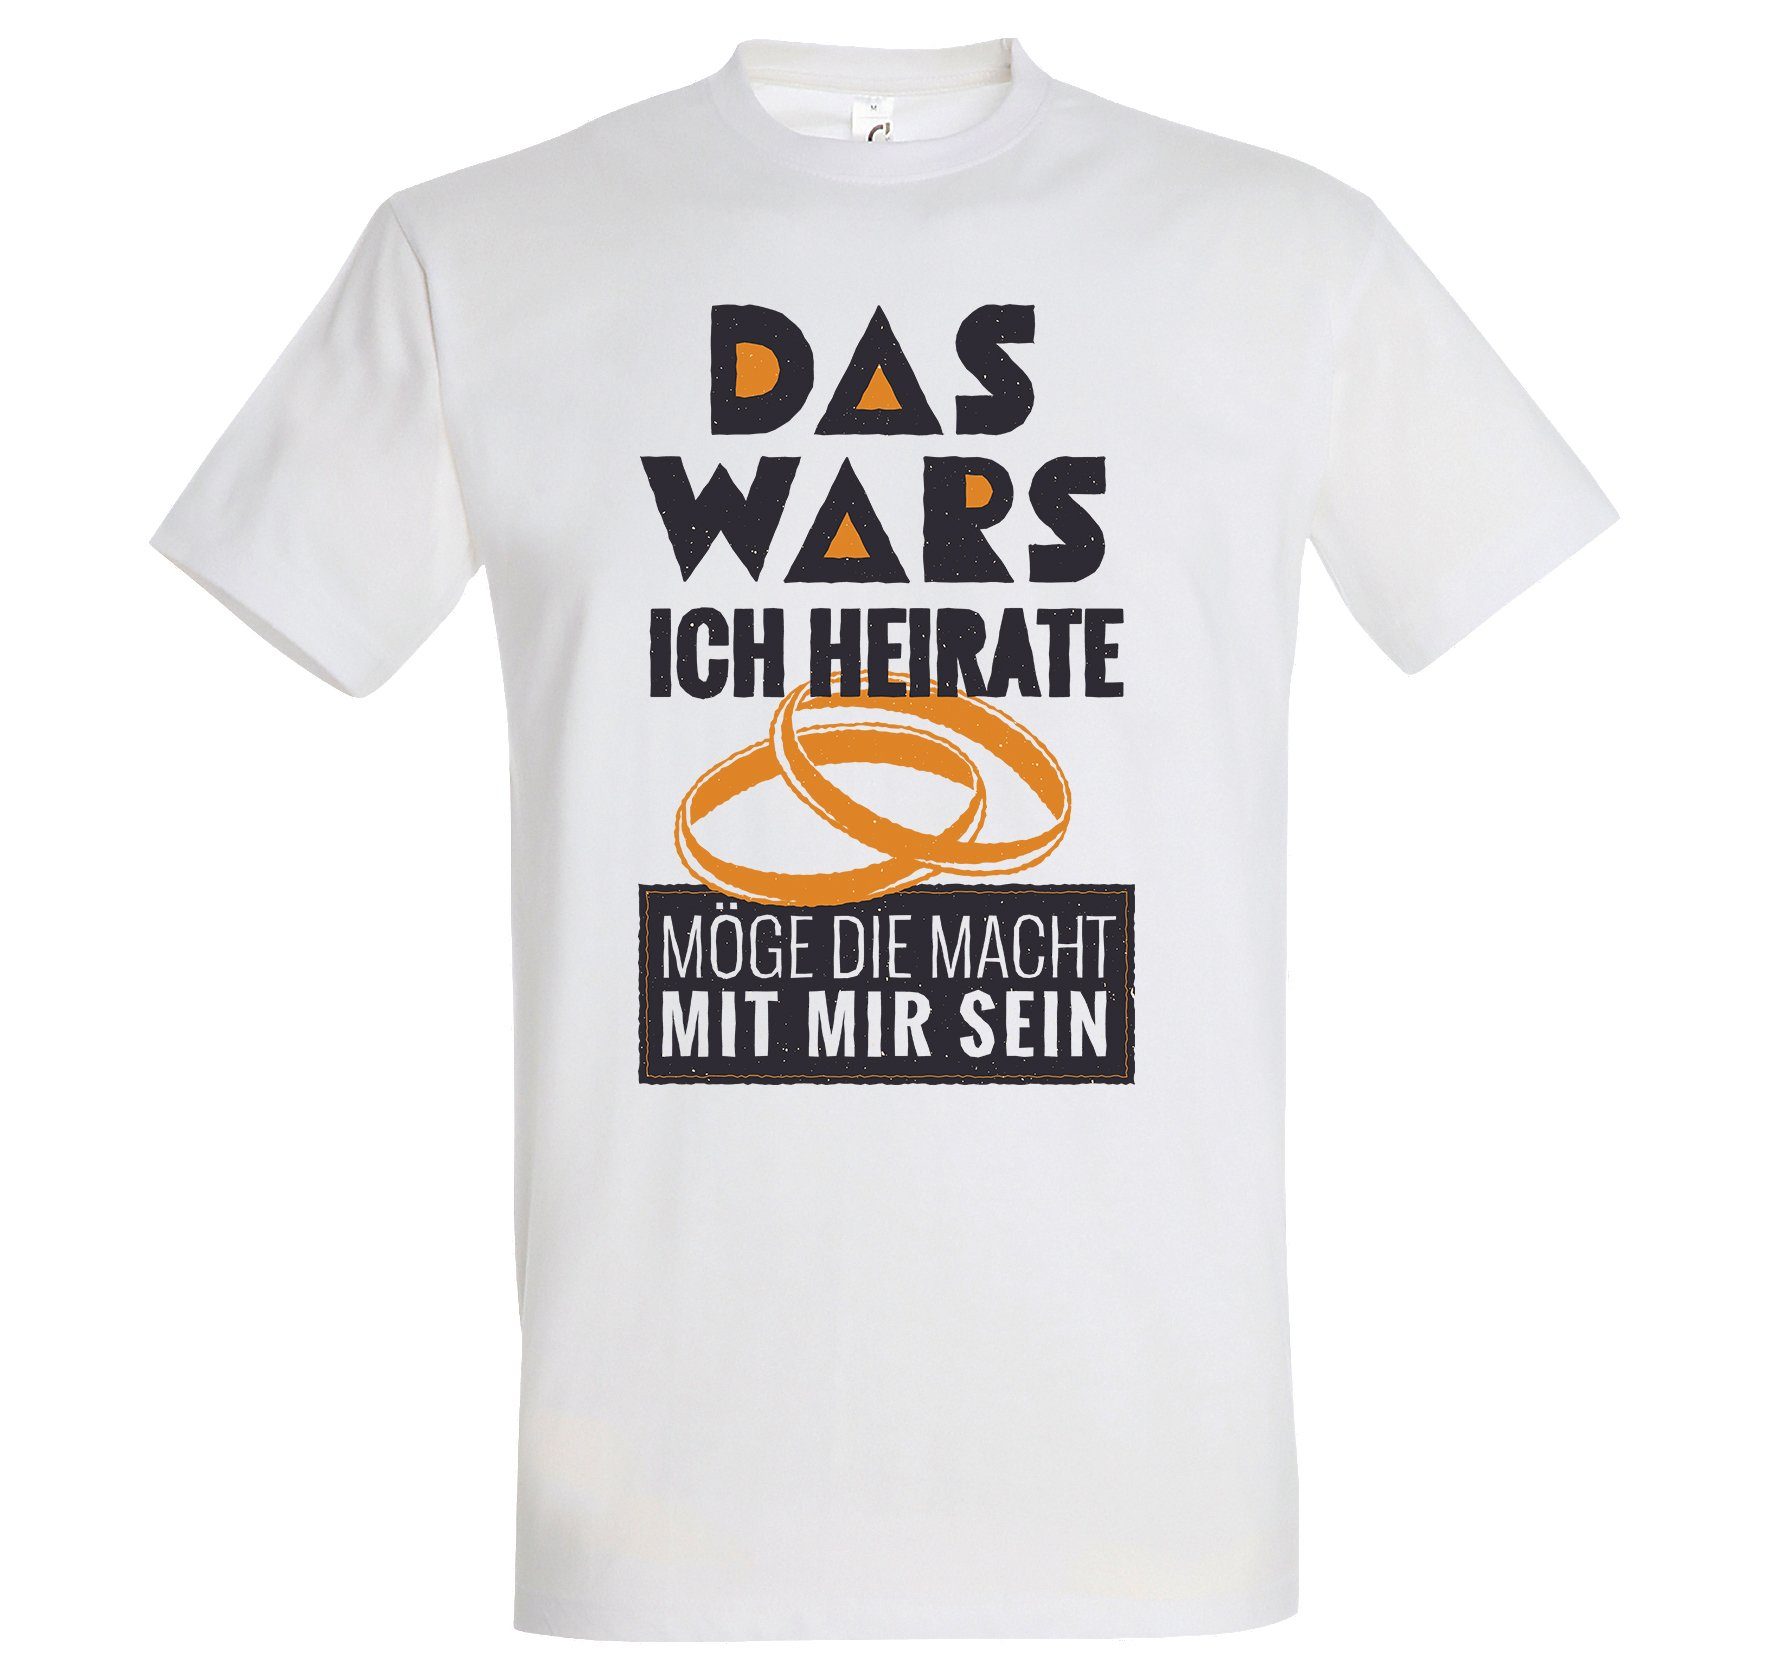 Wars Heirate Weiß Shirt Das Herren Frontprint mit Designz lustigem Ich T-Shirt Youth